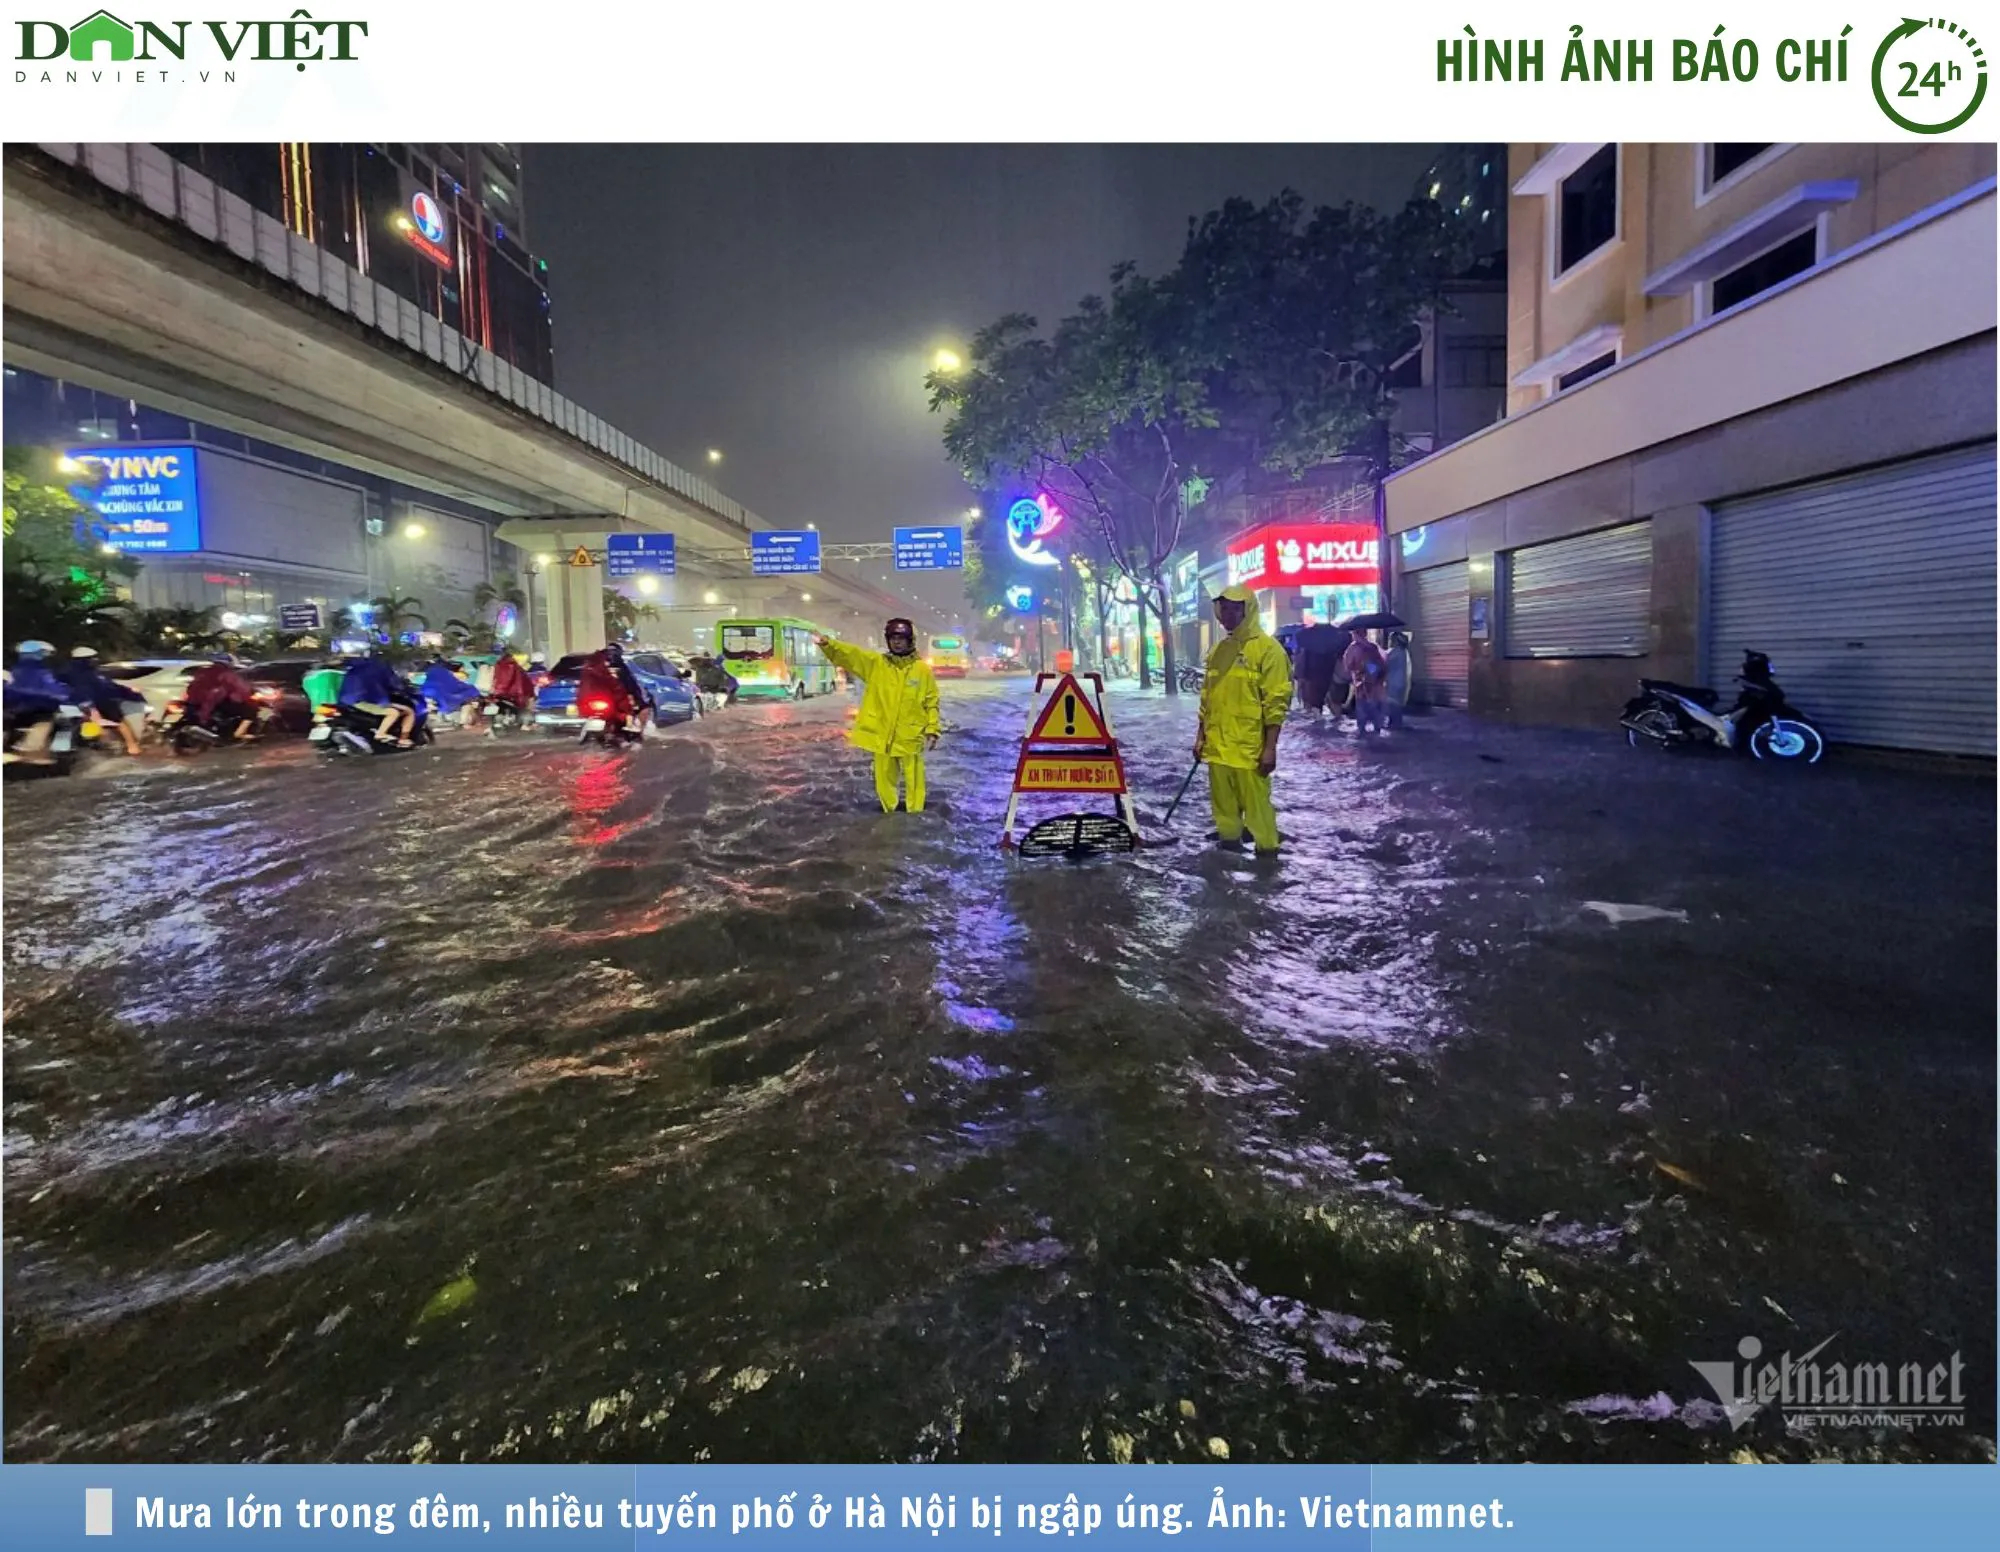 Hình ảnh báo chí 24h: Mưa lớn trong đêm, đường phố Hà Nội lại ngập úng nặng nề- Ảnh 1.